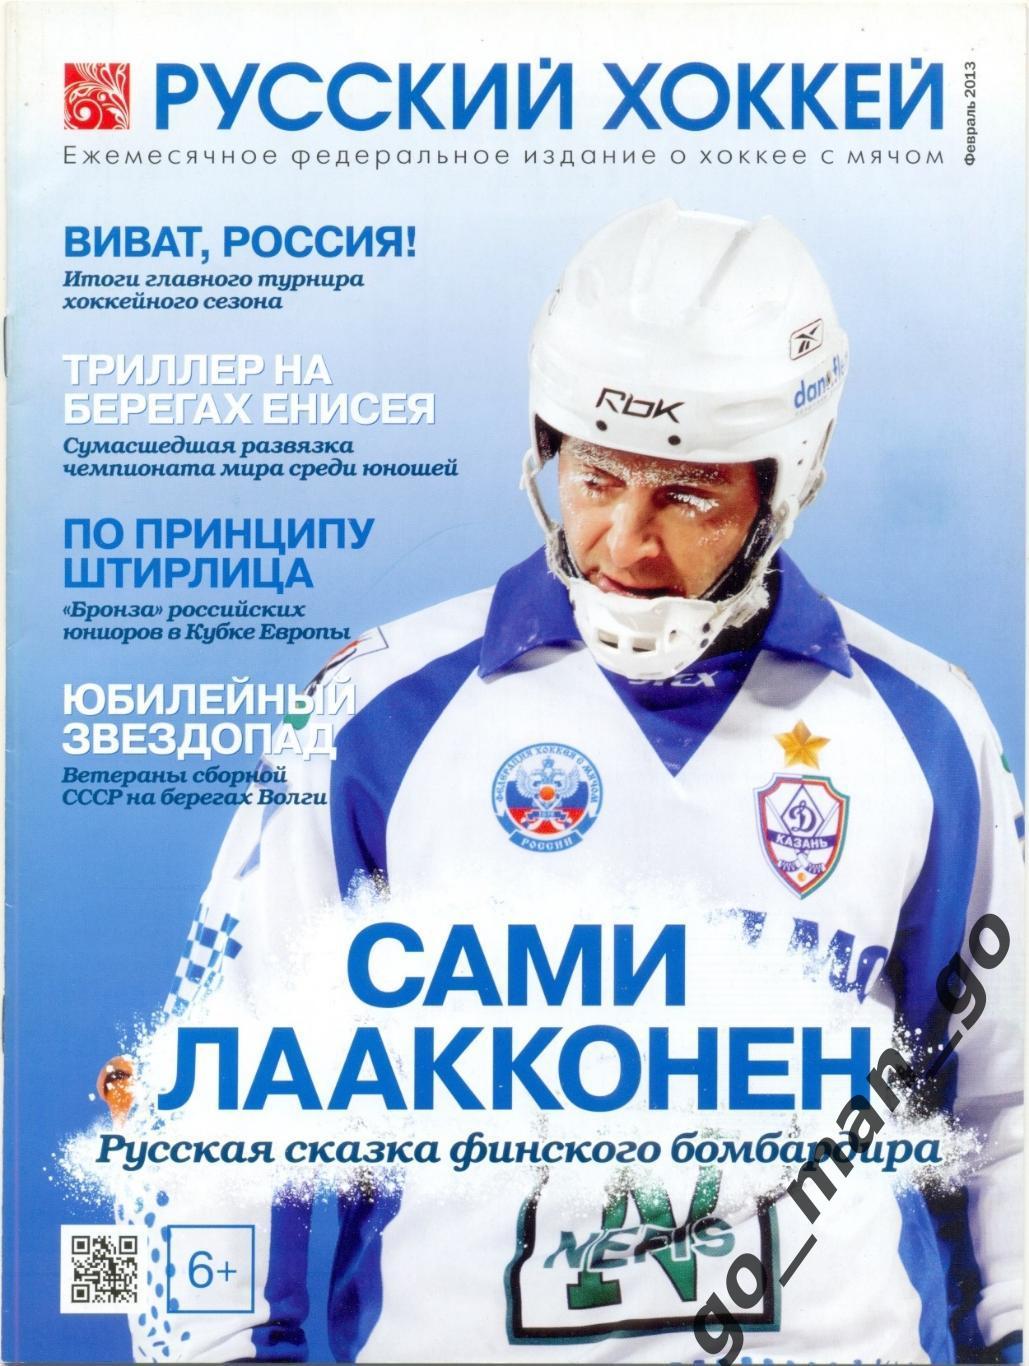 Журнал РУССКИЙ ХОККЕЙ, февраль 2013.